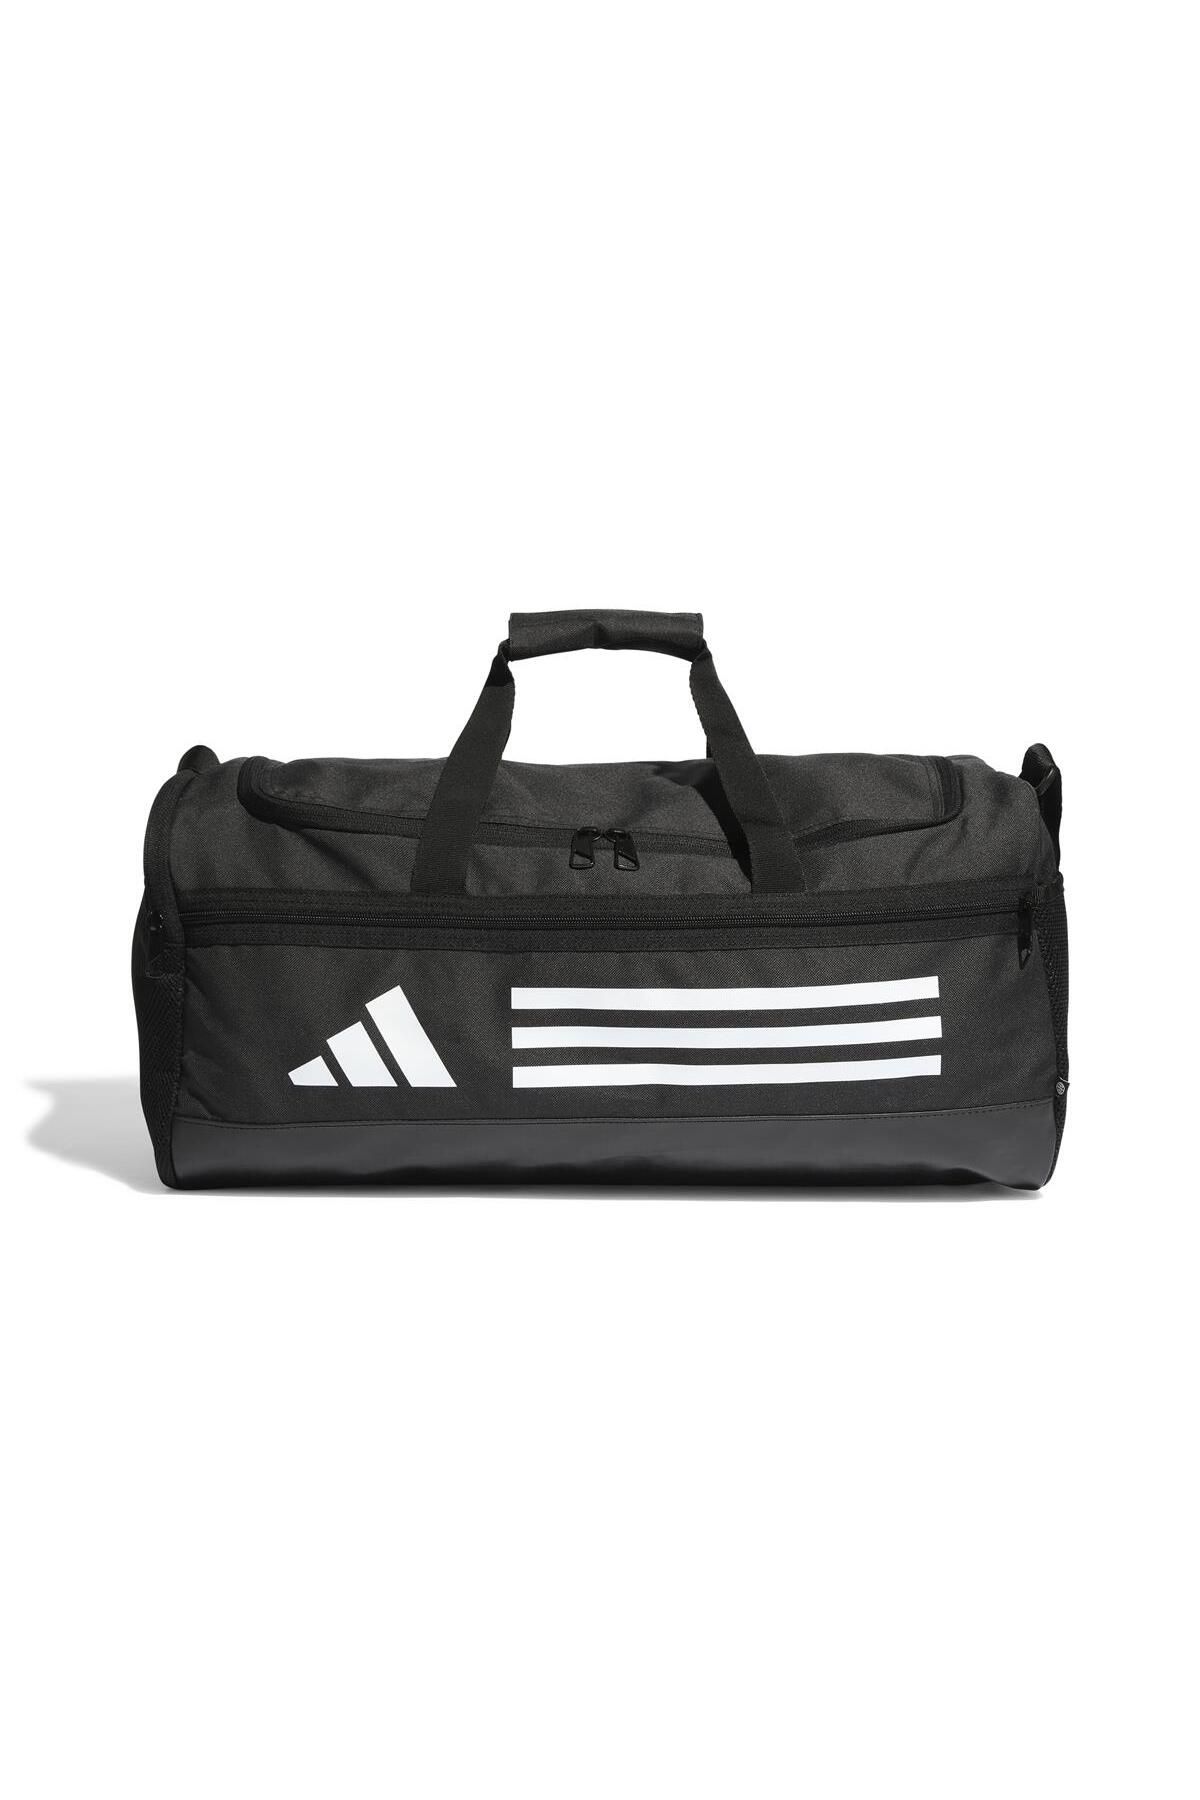 adidas TR Duffle S کیف ورزشی یونیسکس